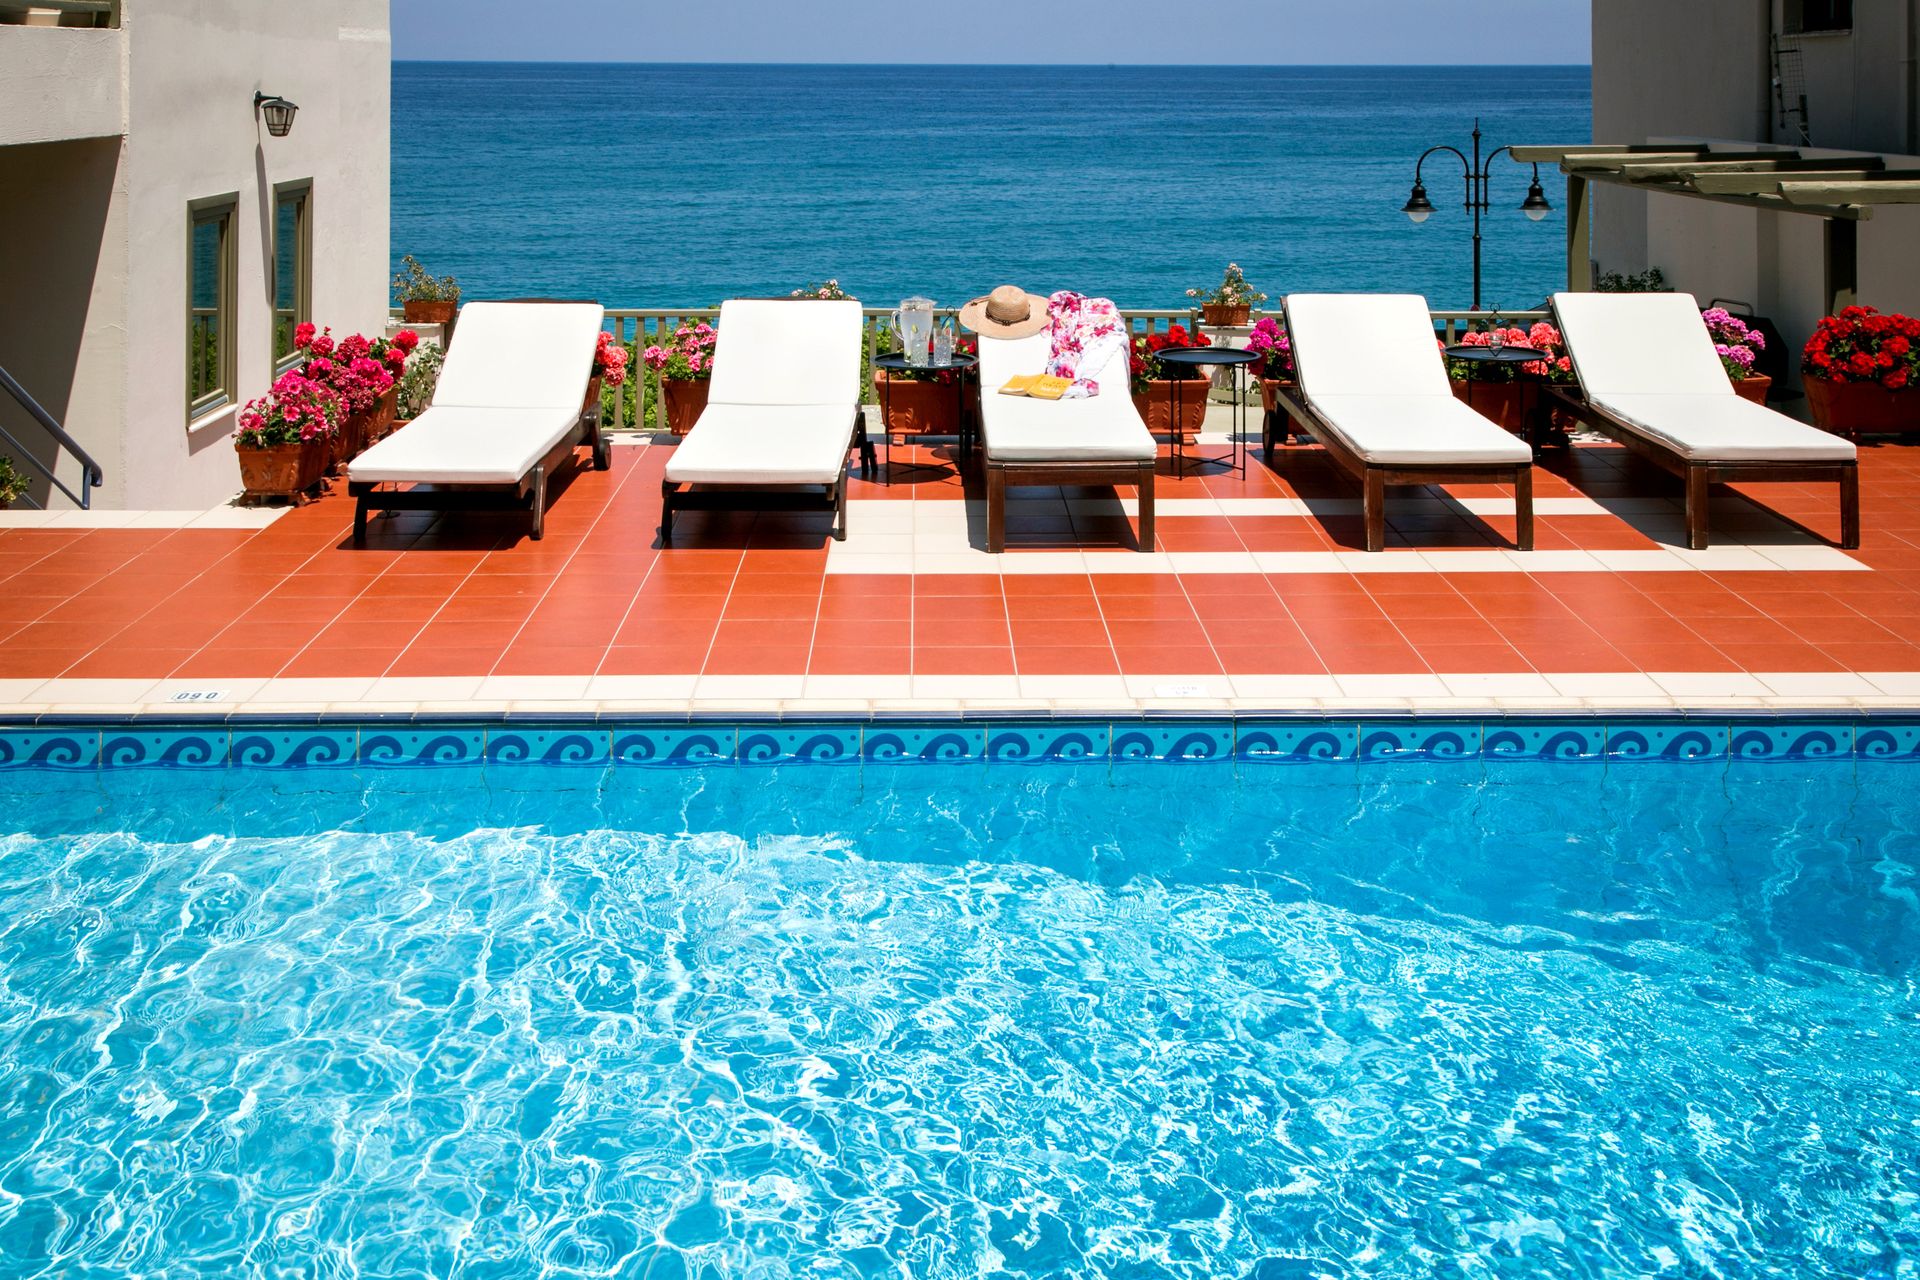 Kenta Beach Hotel - Πήλιο ✦ 2 Ημέρες (1 Διανυκτέρευση) ✦ 2 άτομα ✦ 2 ✦ έως 30/09/2022 ✦ Μπροστά στην Παραλία!